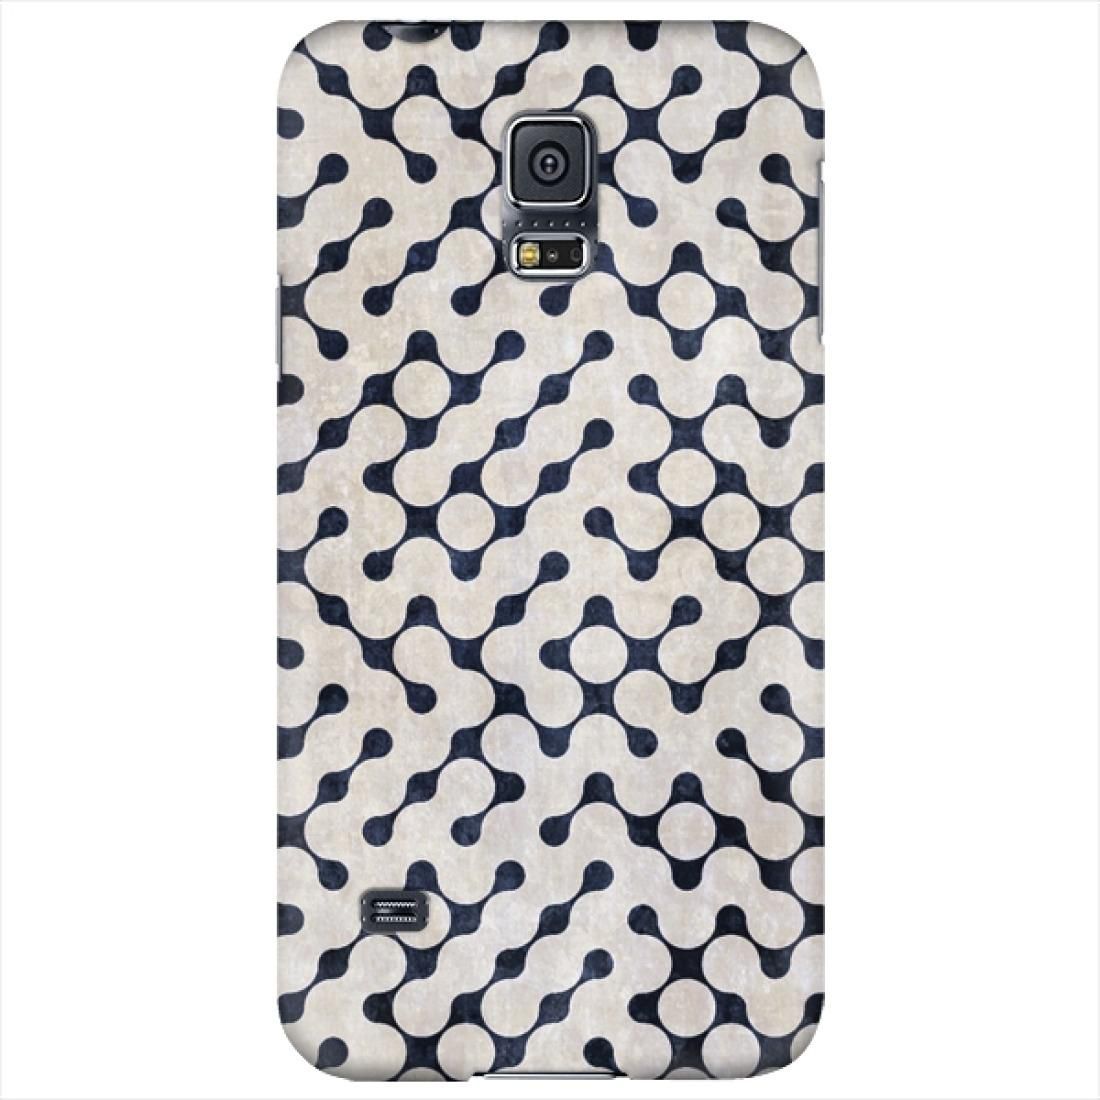 ستايليزد Stylizedd Samsung Galaxy S5 Premium Slim Snap case cover Gloss Finish - Connect the dots - White